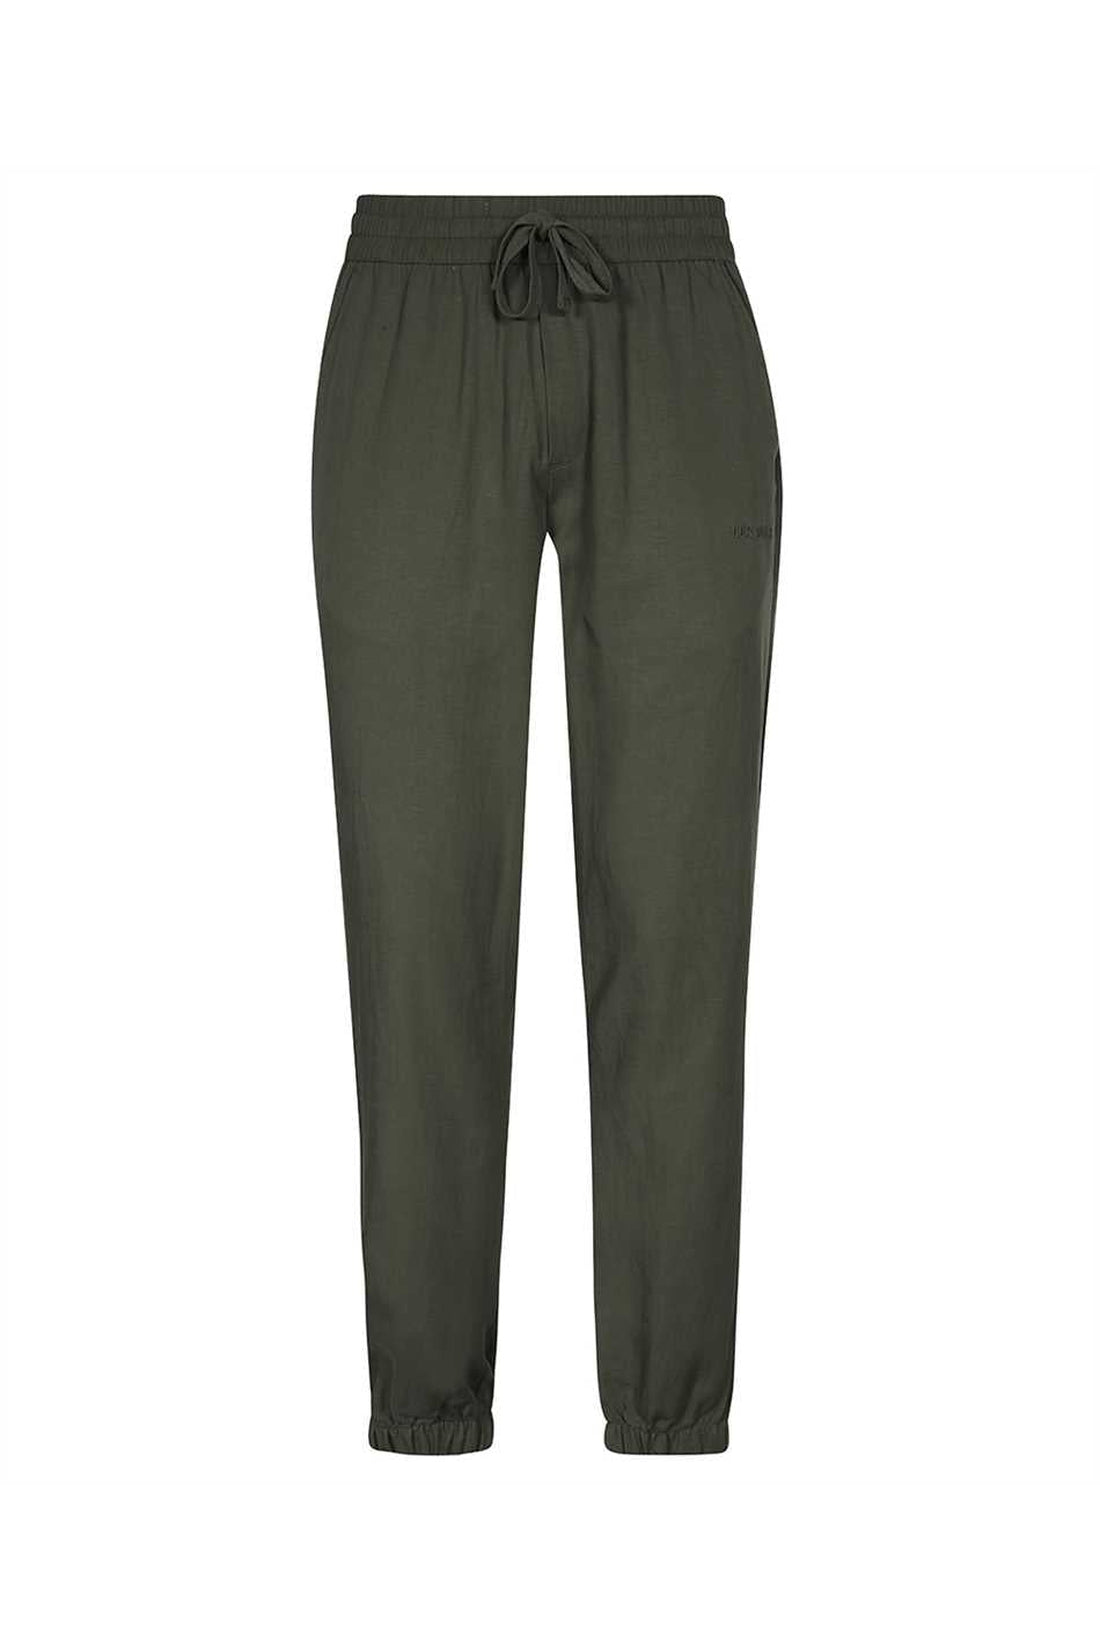 Les Deux-OUTLET-SALE-Adjustable drawstring elastic waistband trousers-ARCHIVIST